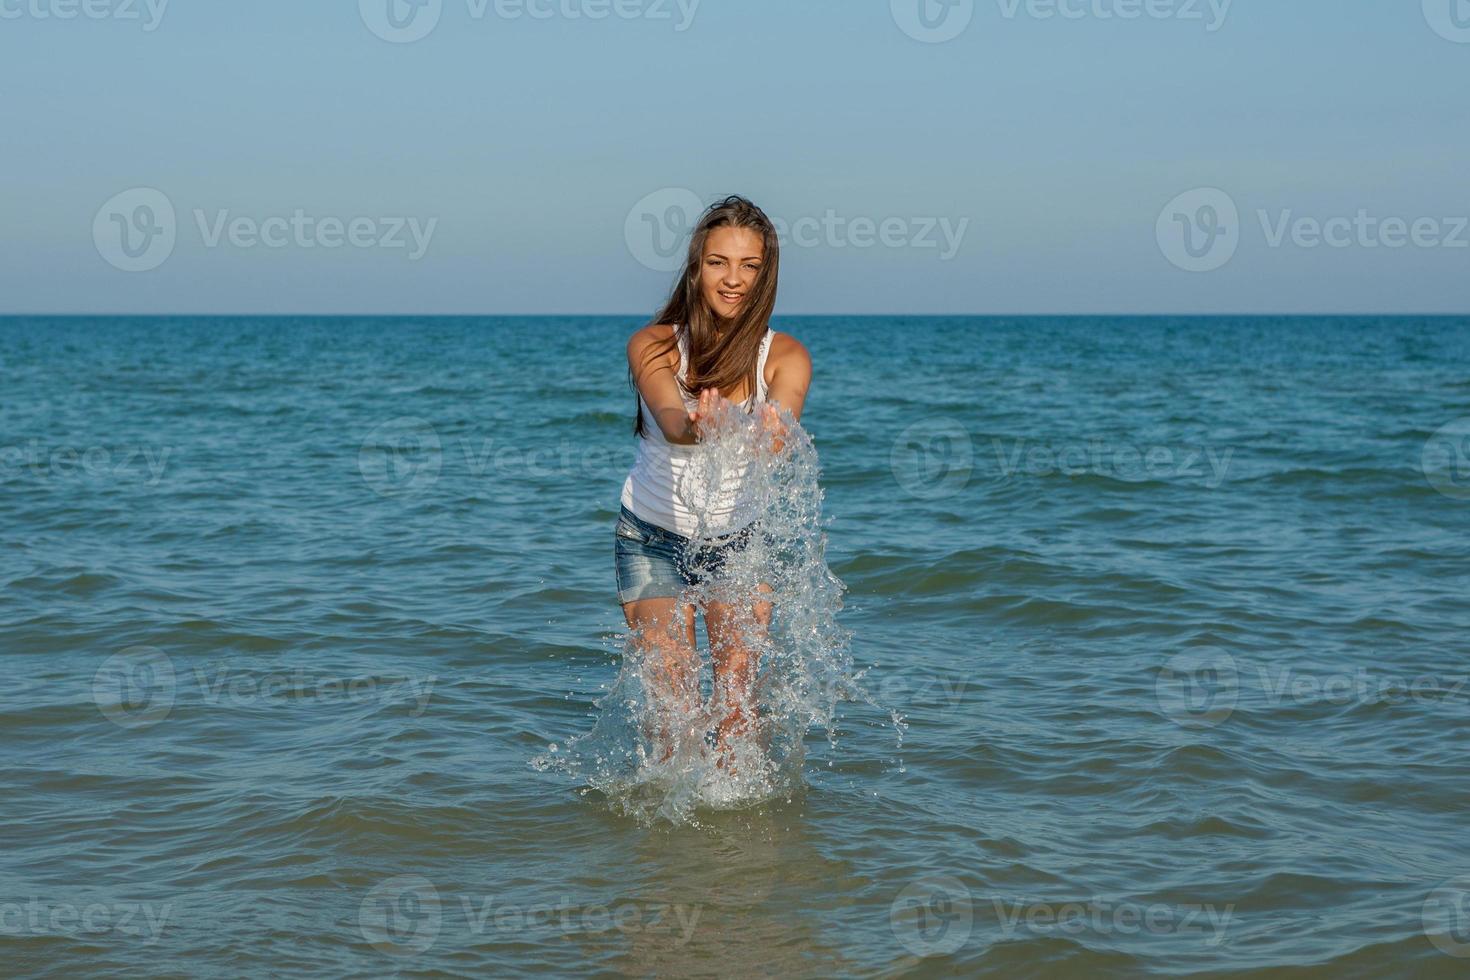 jong meisje spettert het water in de zee foto